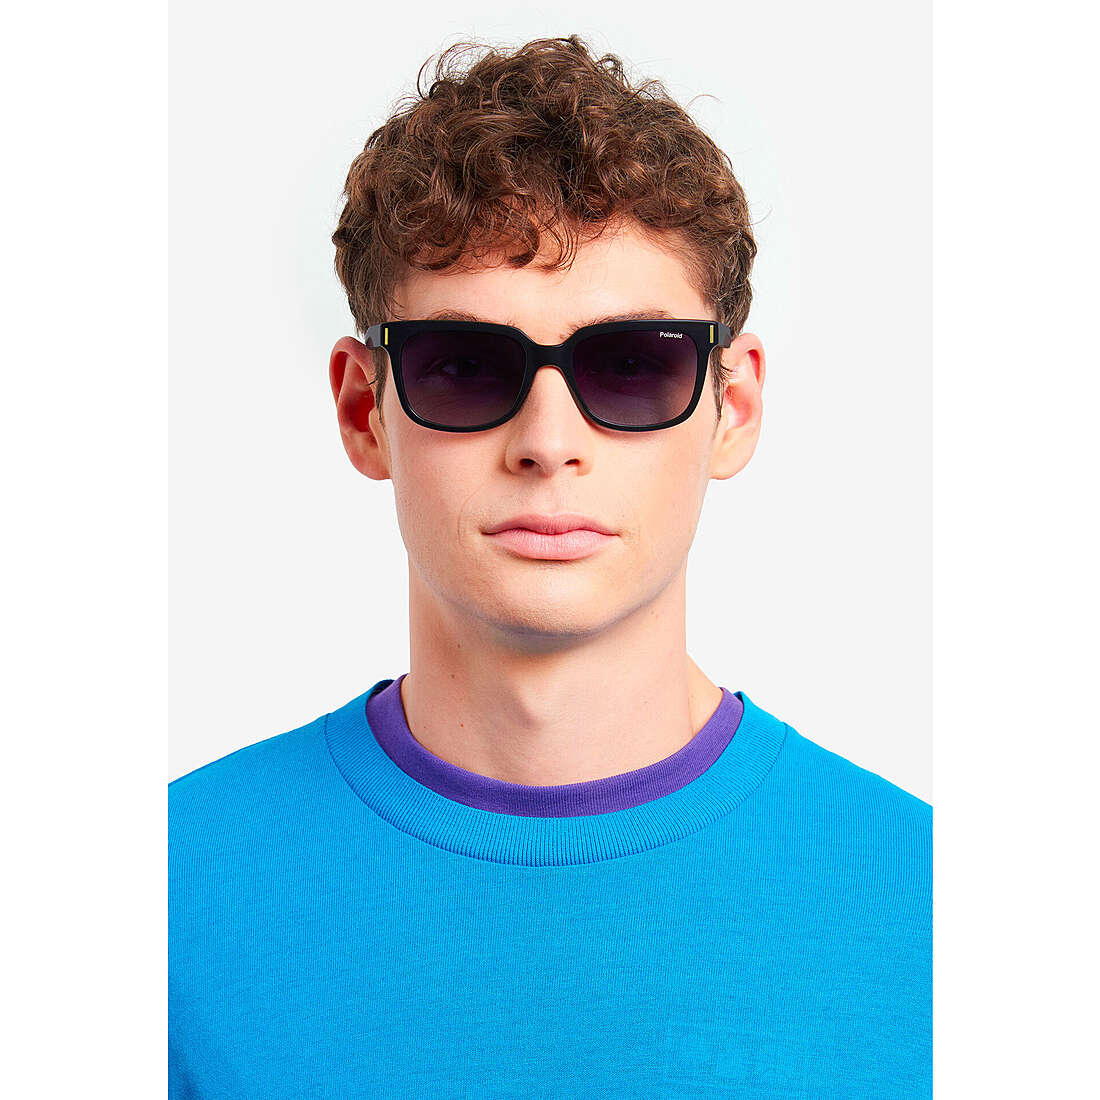 Polaroid occhiali da sole Cool unisex 20568880754WJ indosso